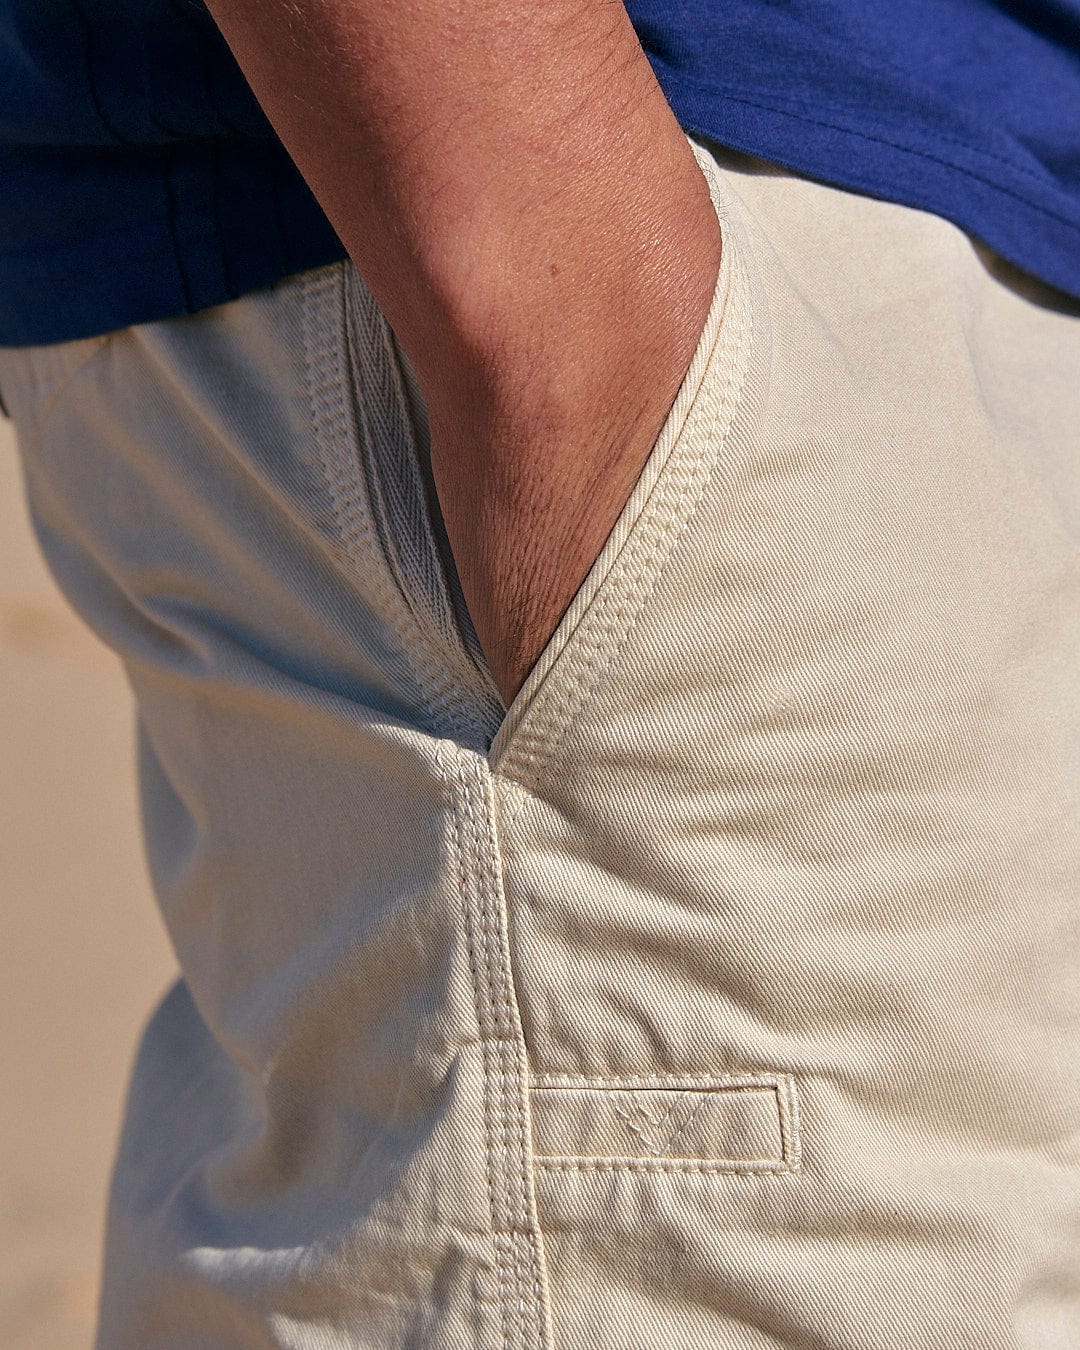 A man's pocket on a pair of Saltrock Sennen - Mens Chino Short - Natural shorts.